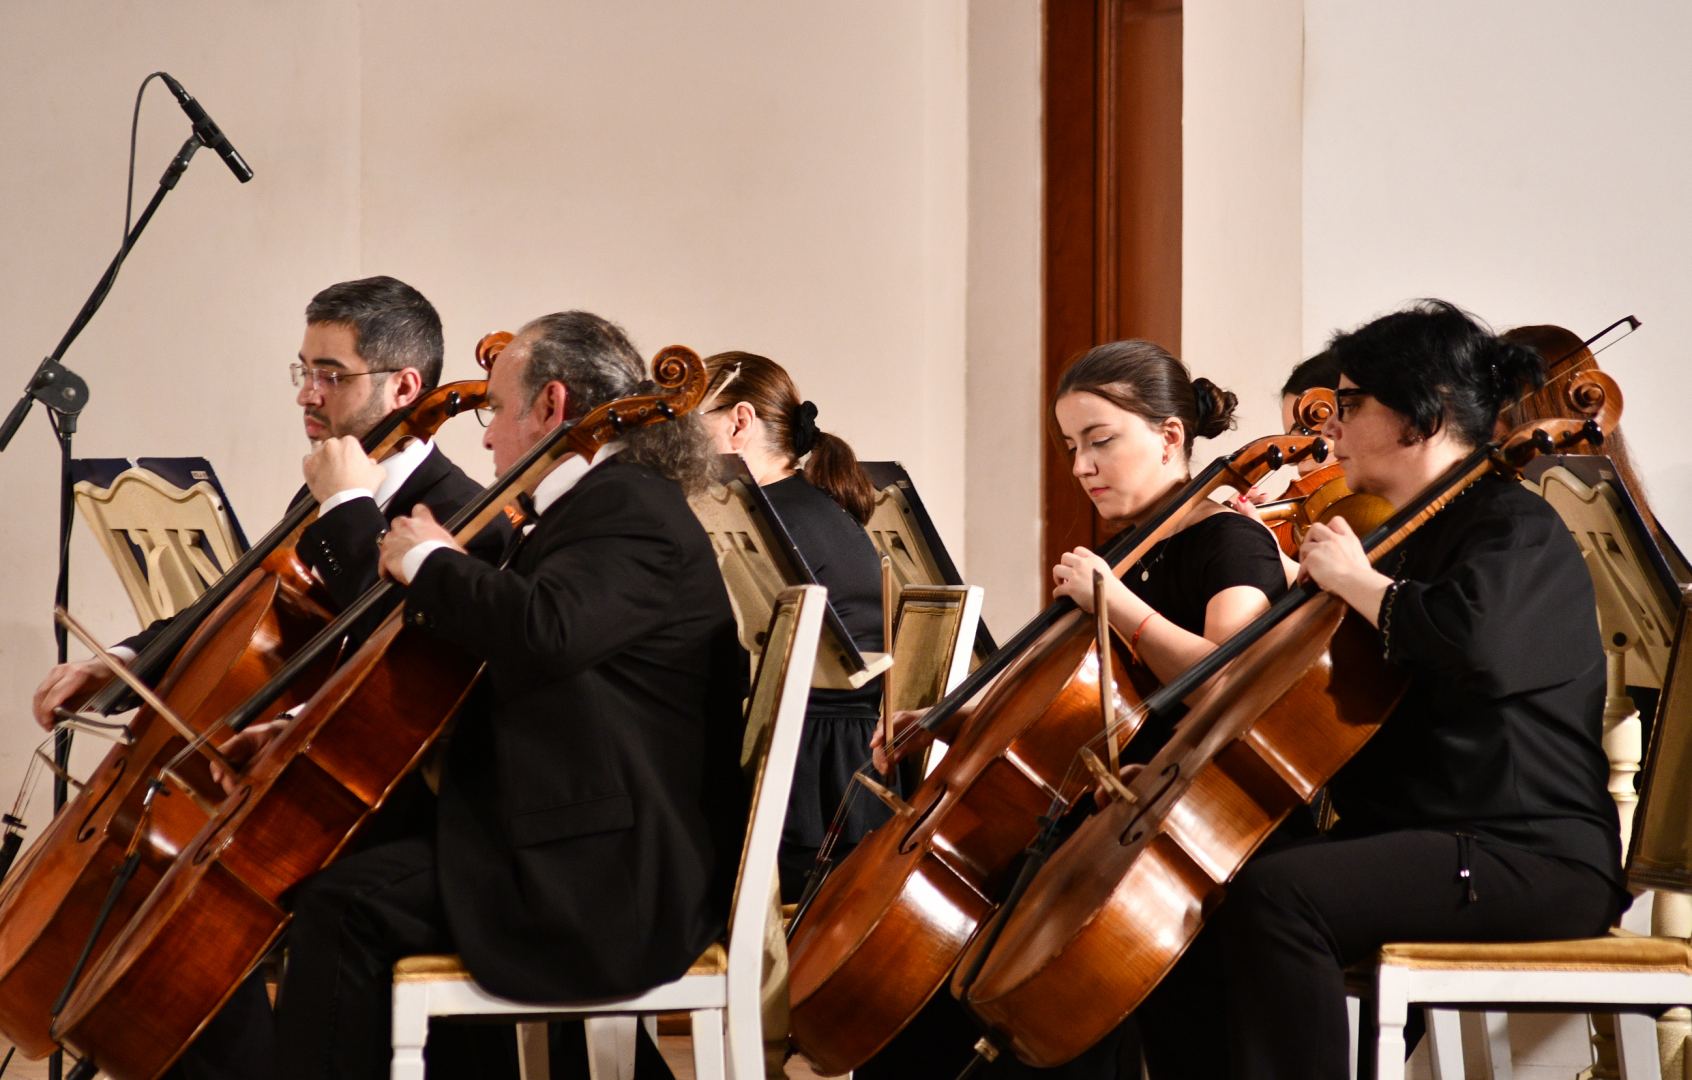 “Yeni adlar” layihəsi çərçivəsində növbəti konsert keçirilib (FOTO)